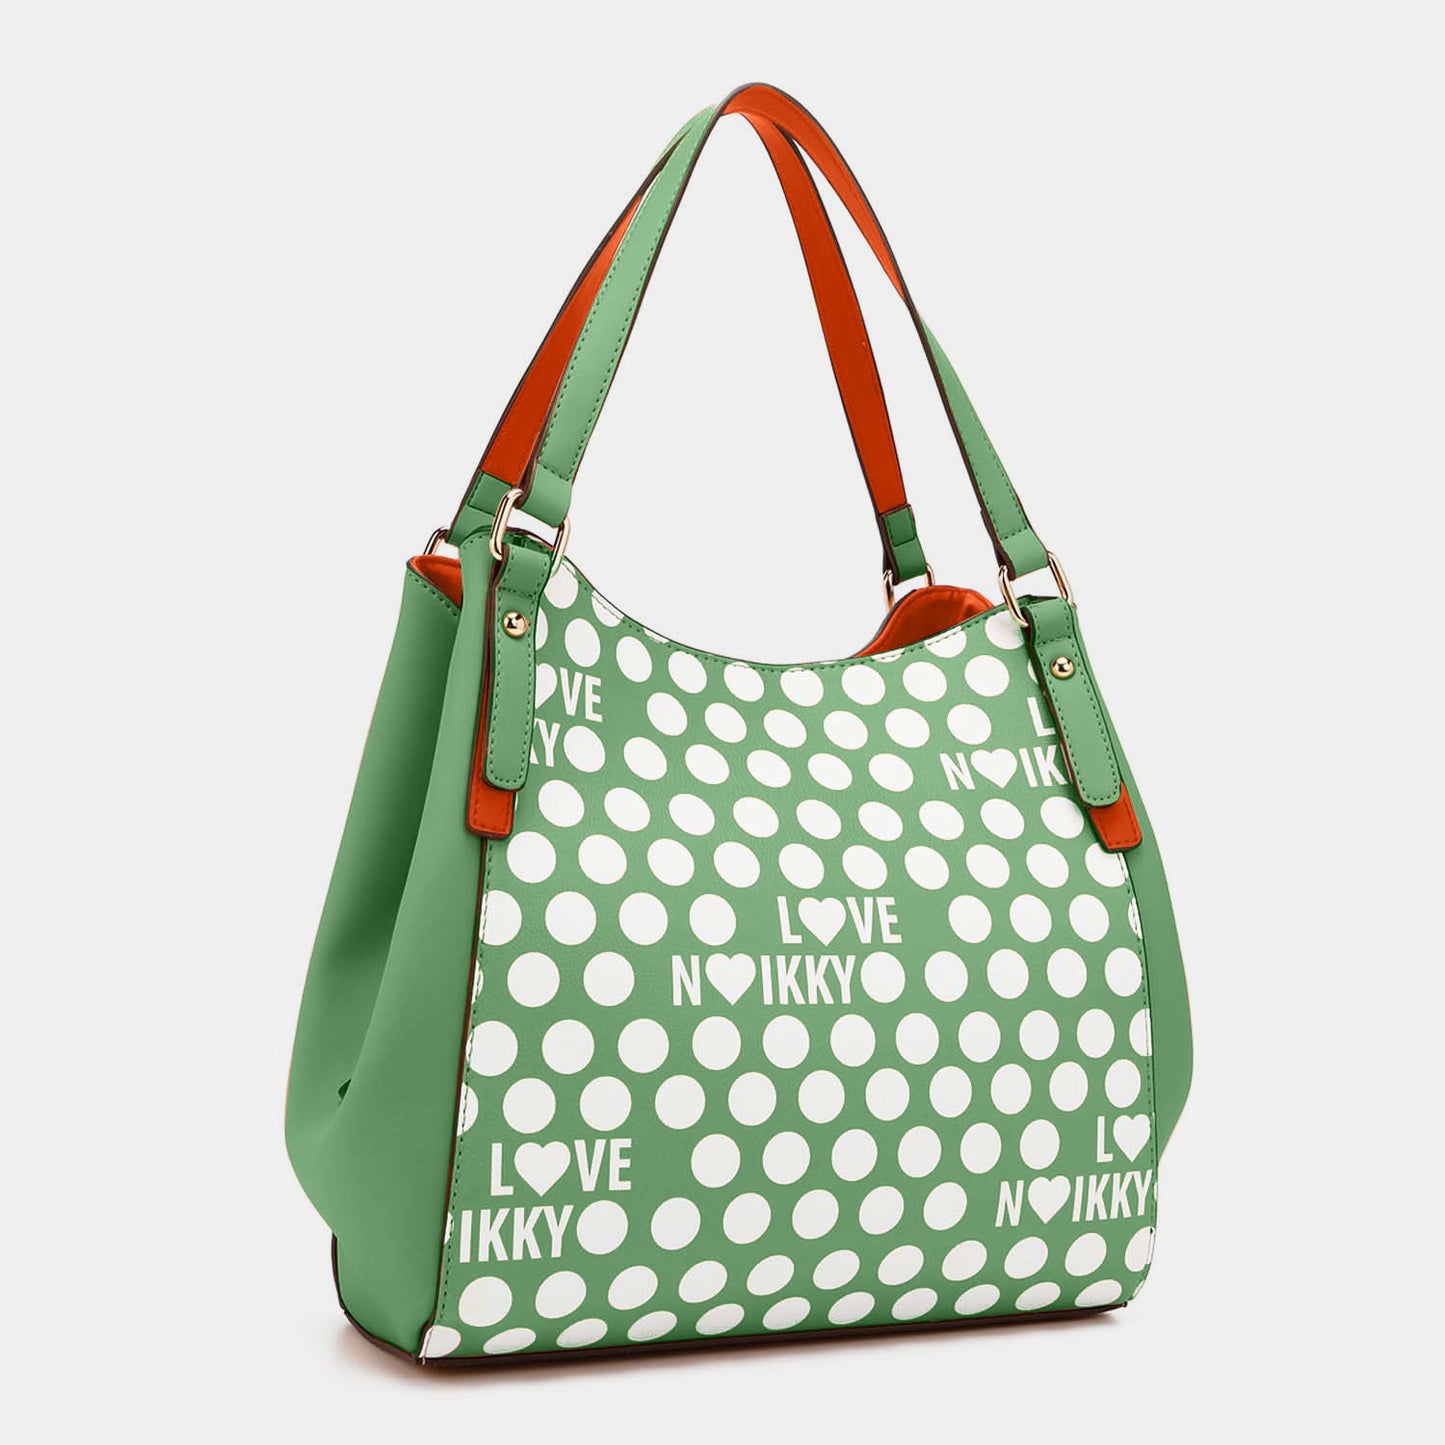 TEEK - NL Contrast Polka Dot Handbag BAG TEEK Trend   